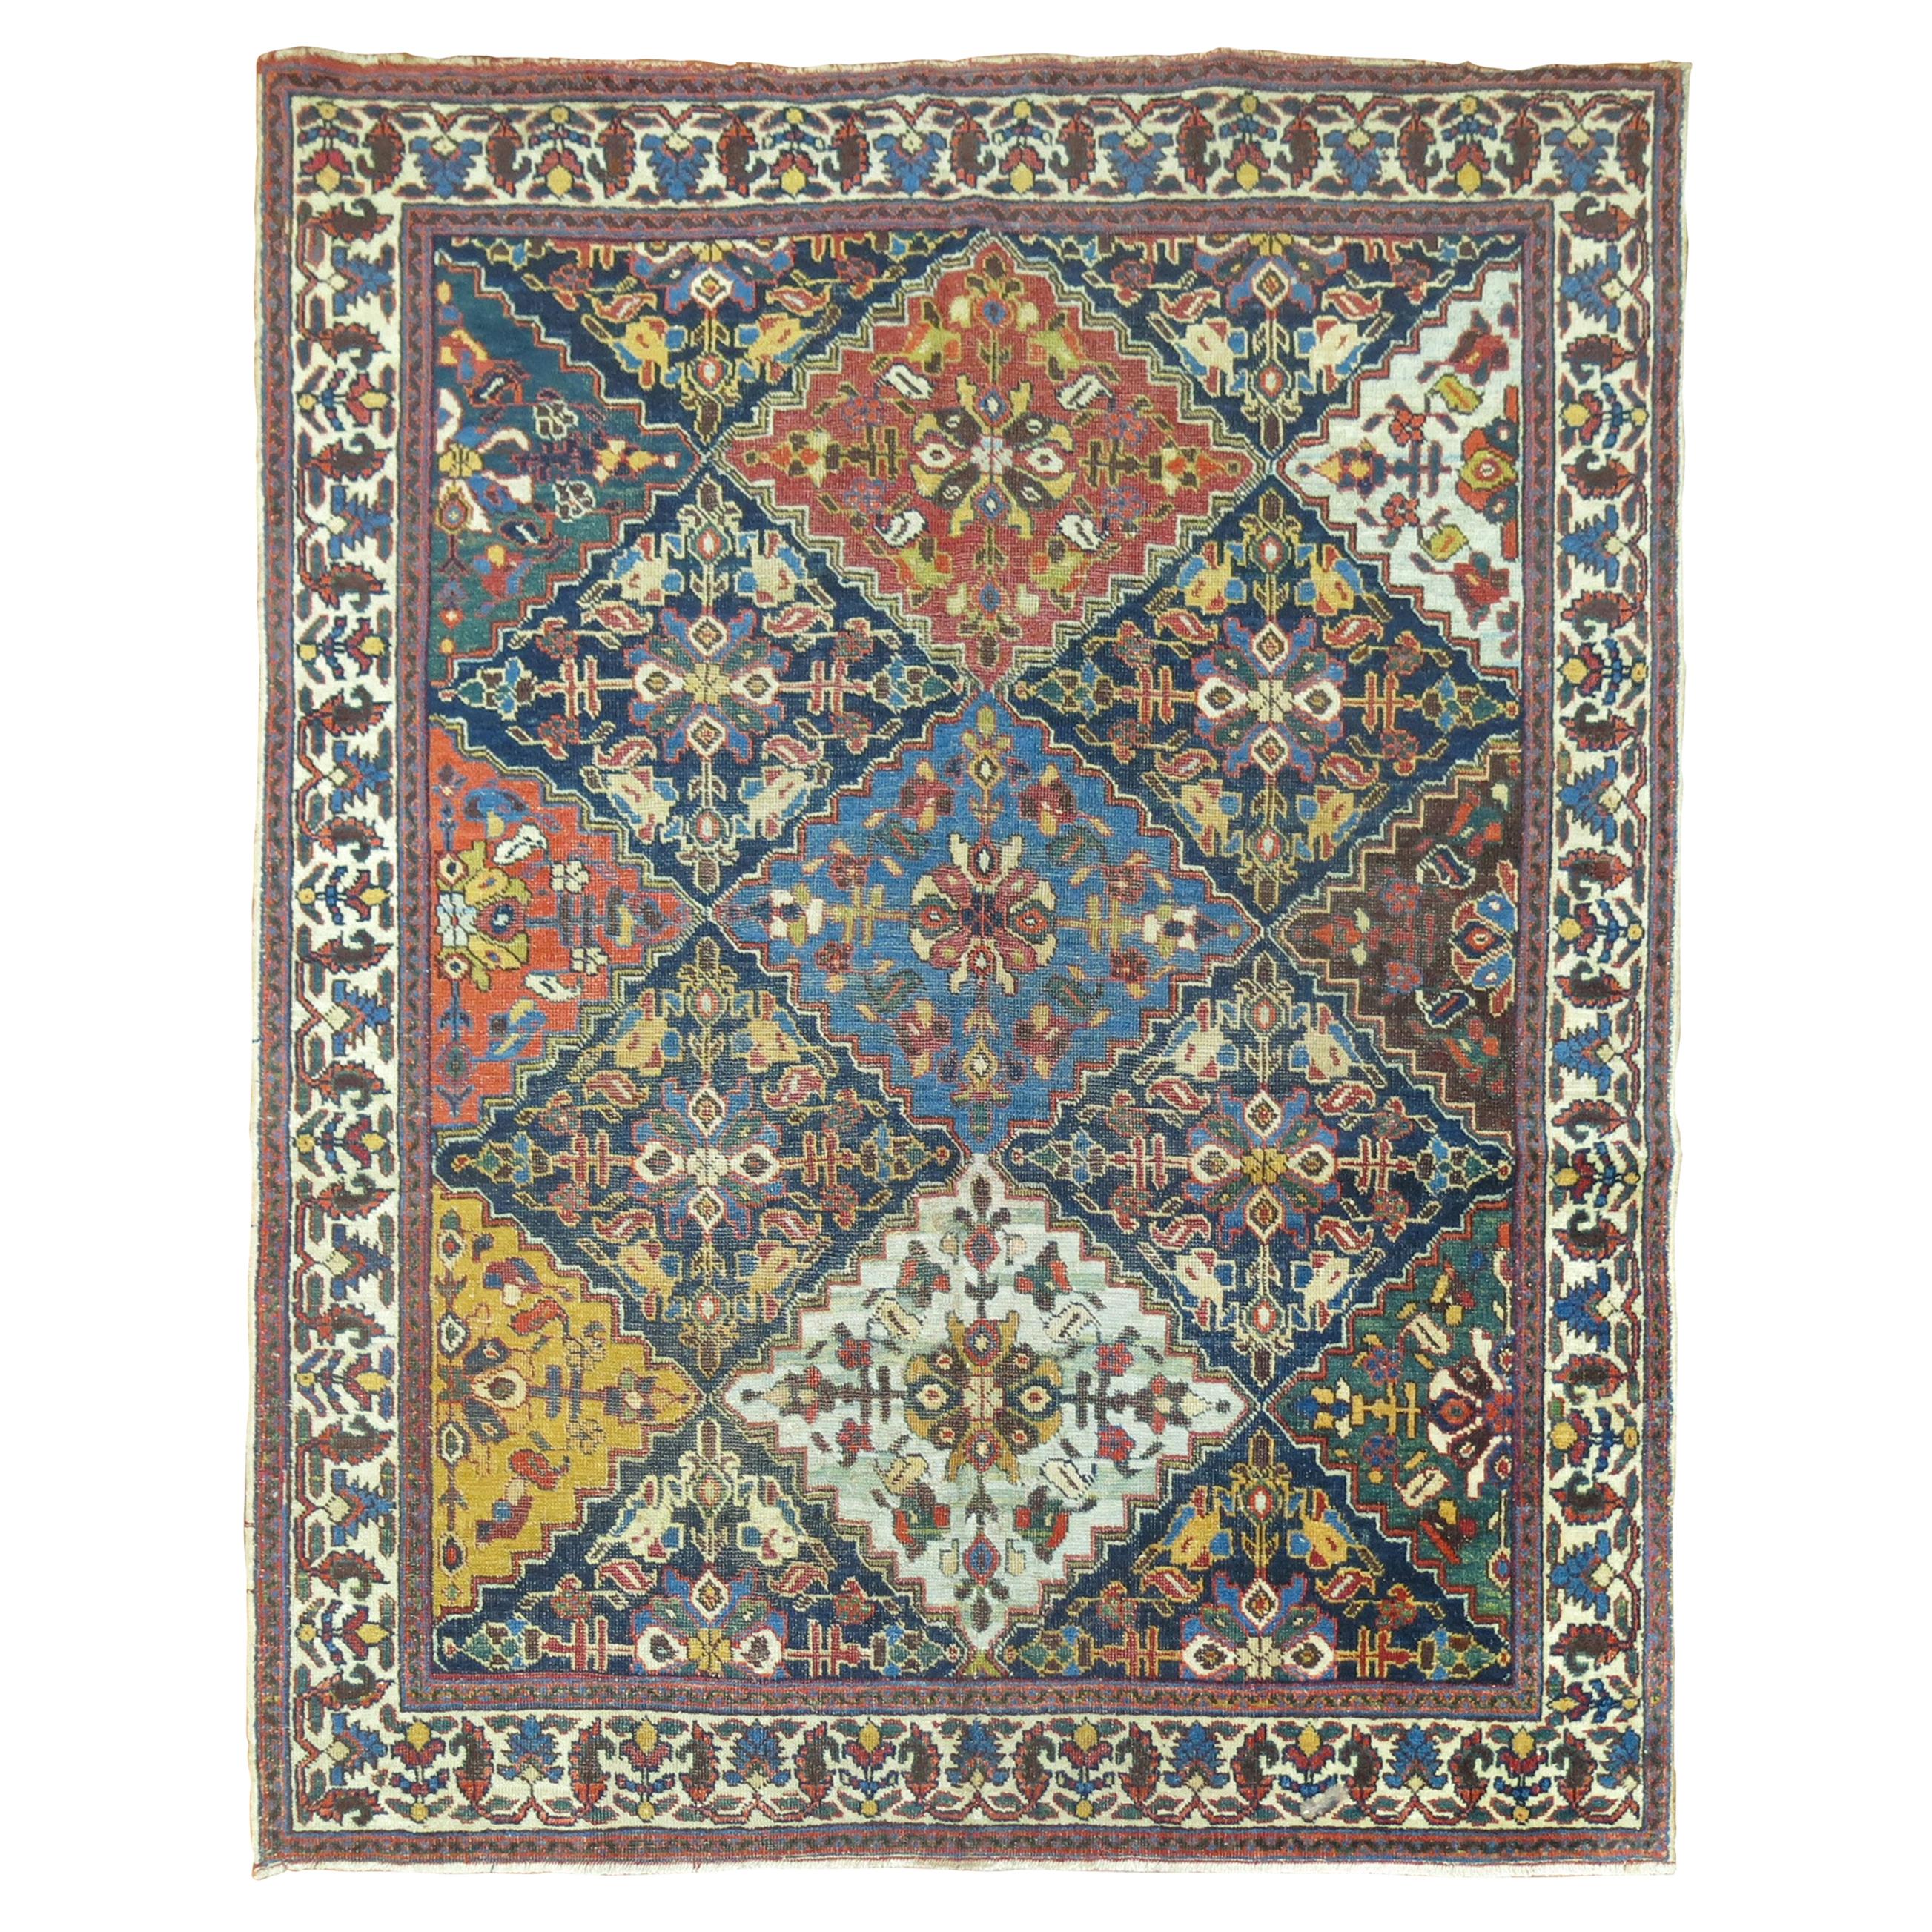 Antique Persian Square Rug